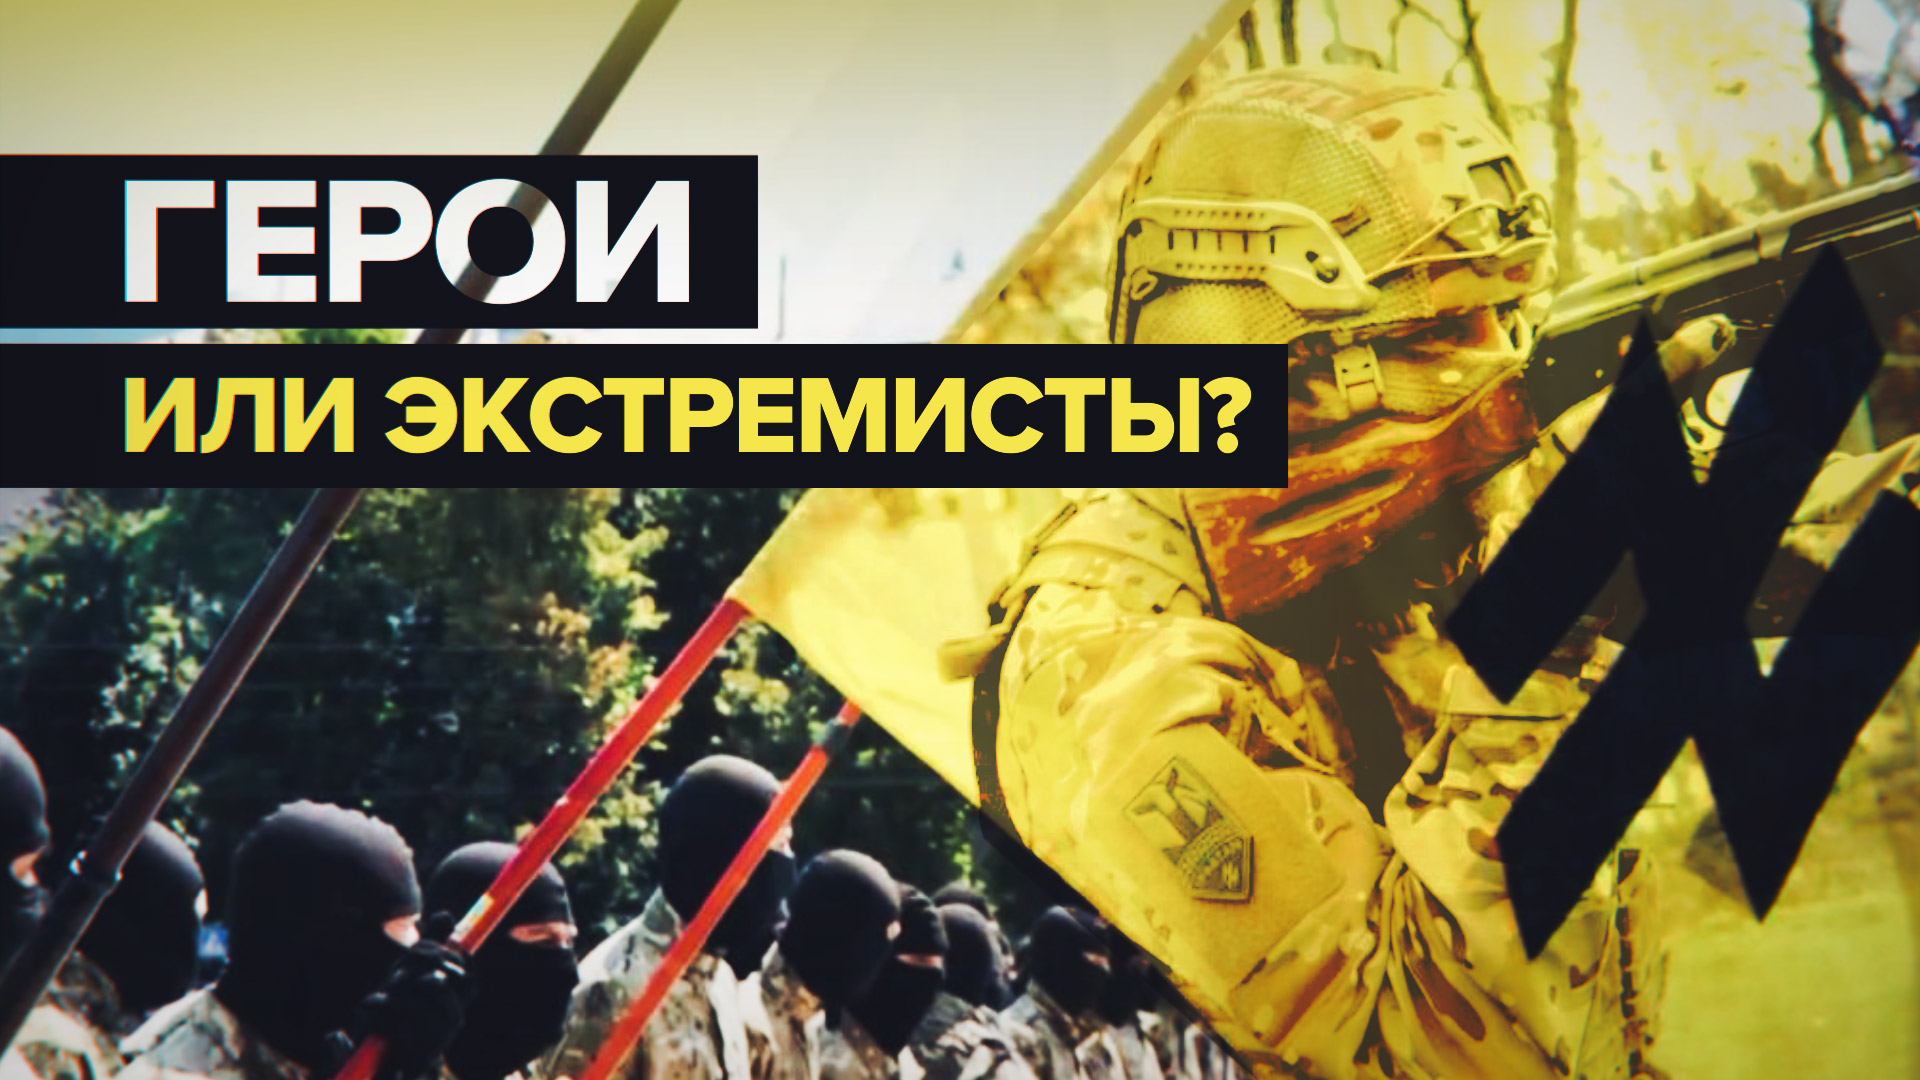 Опубликованы доказательства того, что США хотели признать батальон «Азов» экстремистским